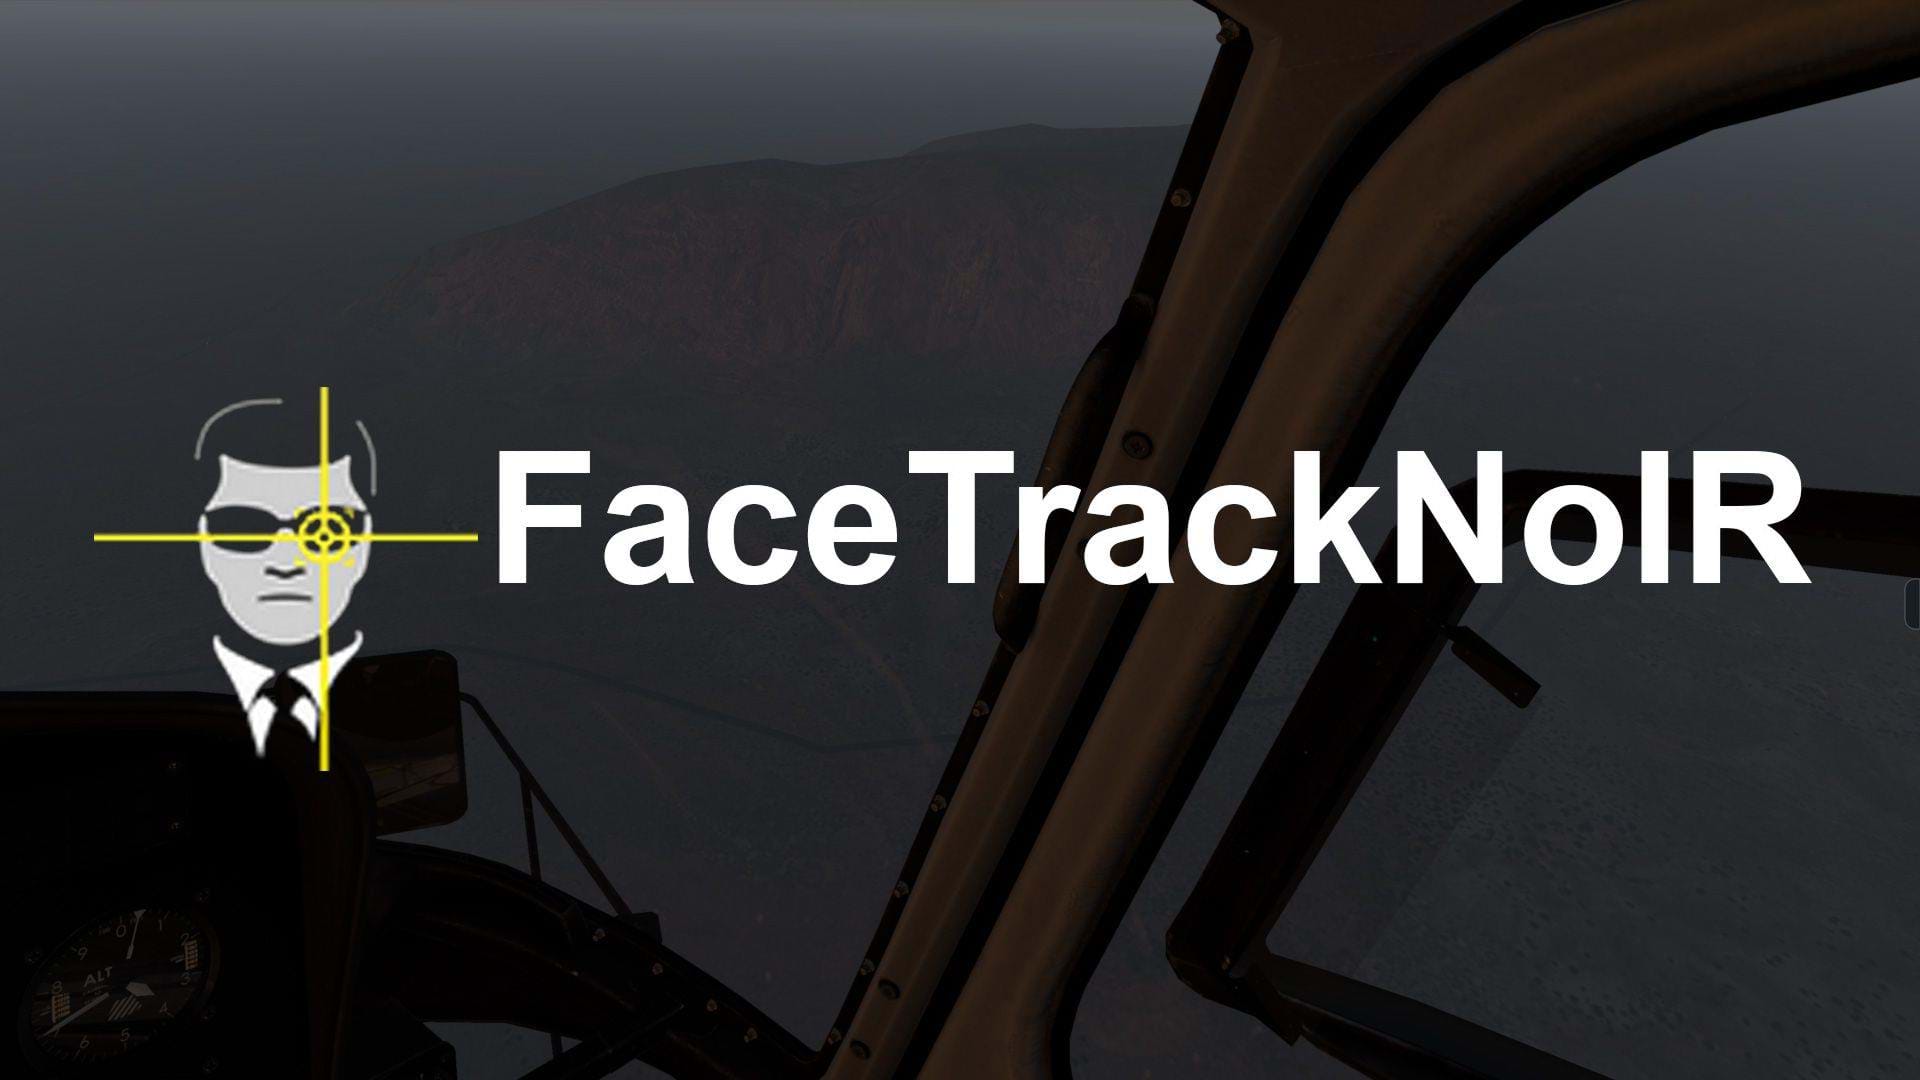 facetracknoir 2.0 does not start webcam